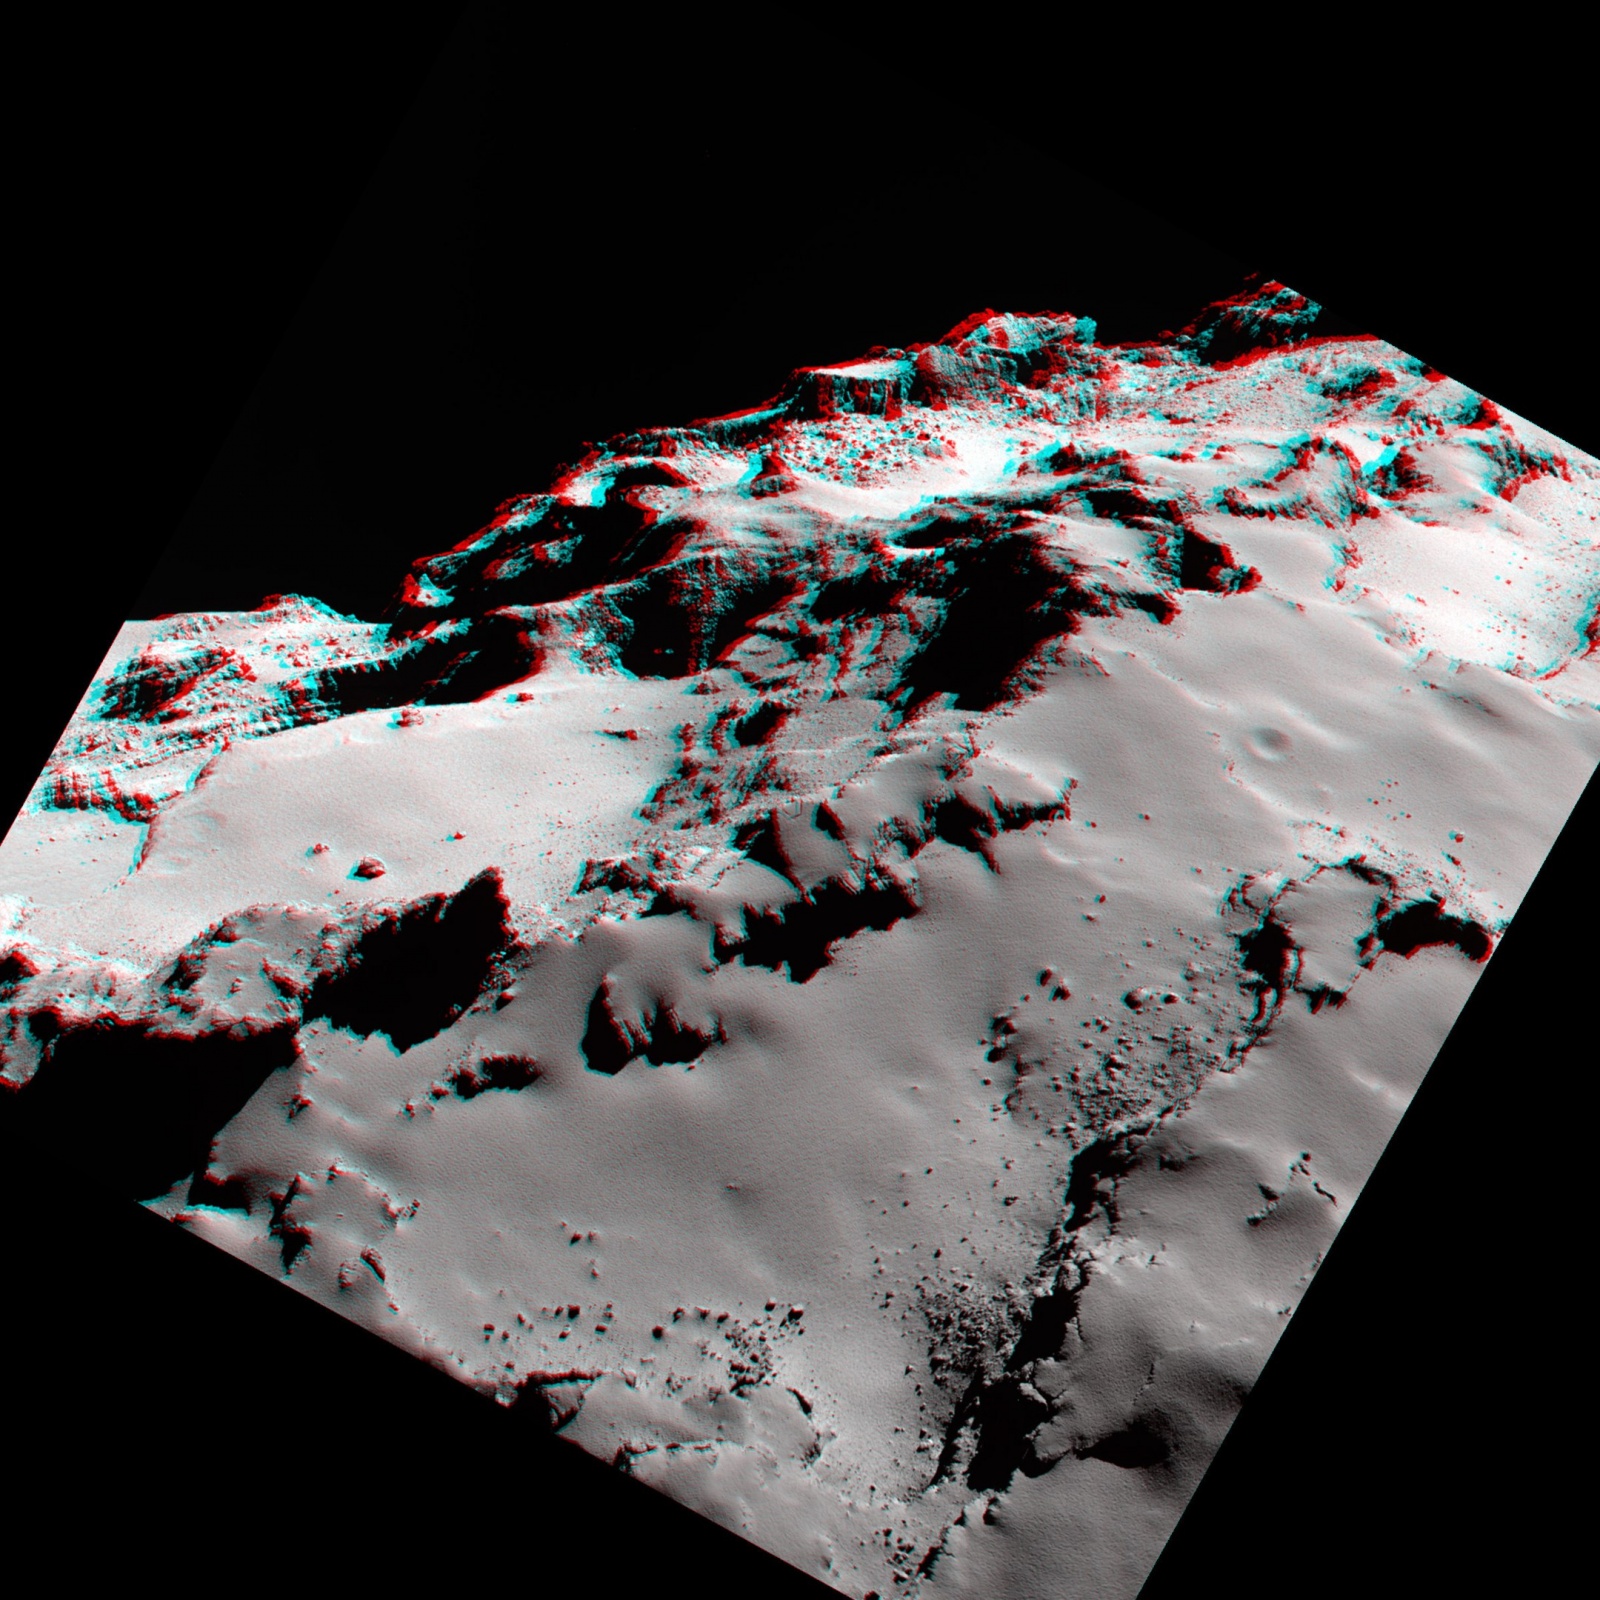 Космическое агентство ESA выложило в Сеть новые фотографии кометы Чурюмова-Герасименко - 5